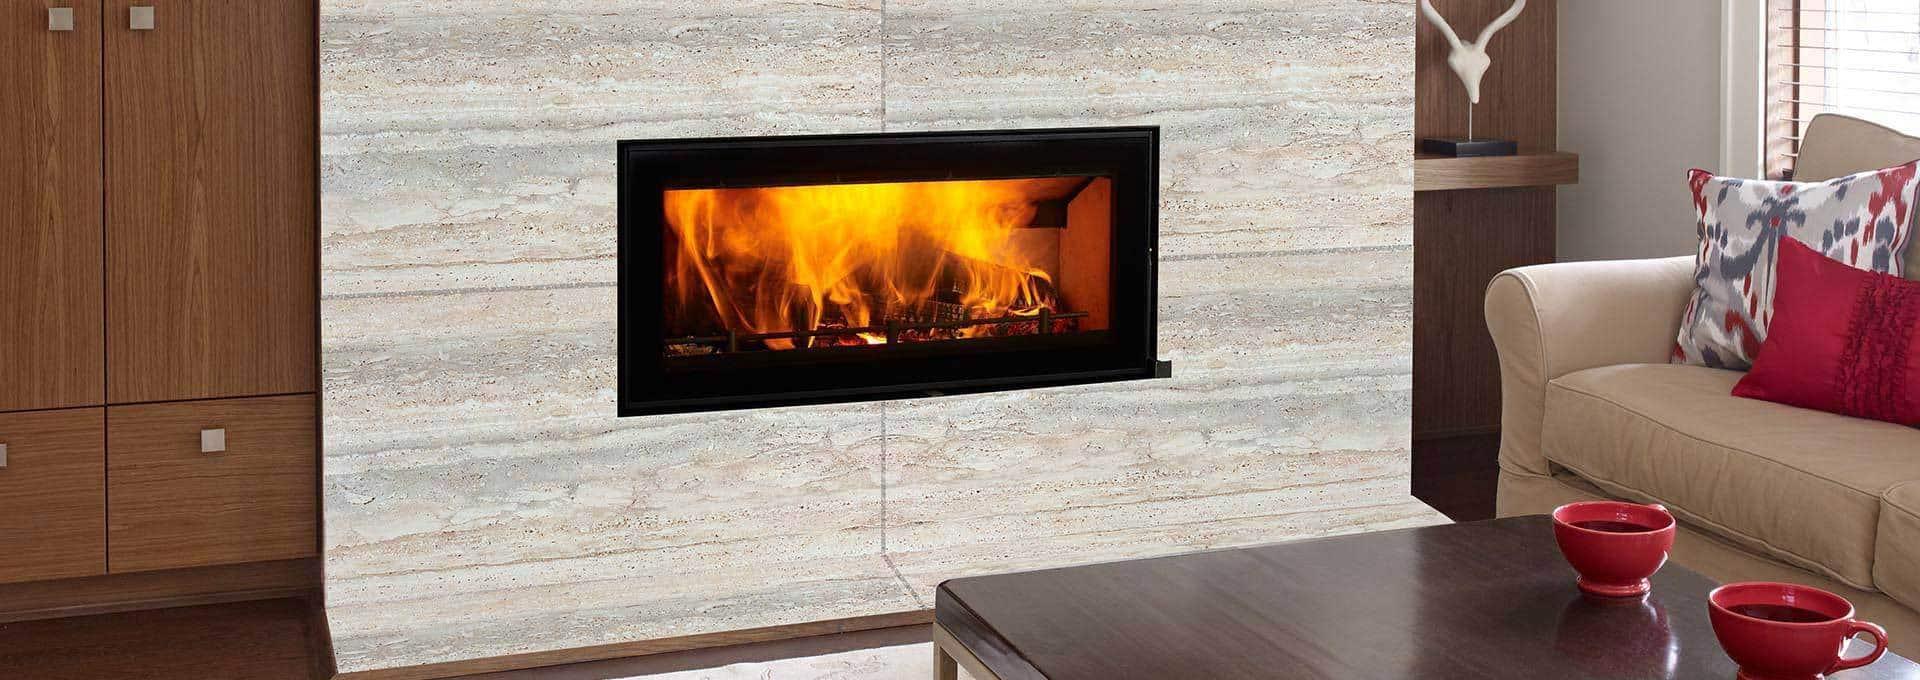 Regency Montrose L850B Wood Fireplace (Zero Clearance), Regency, Regency Wood & Gas Heating